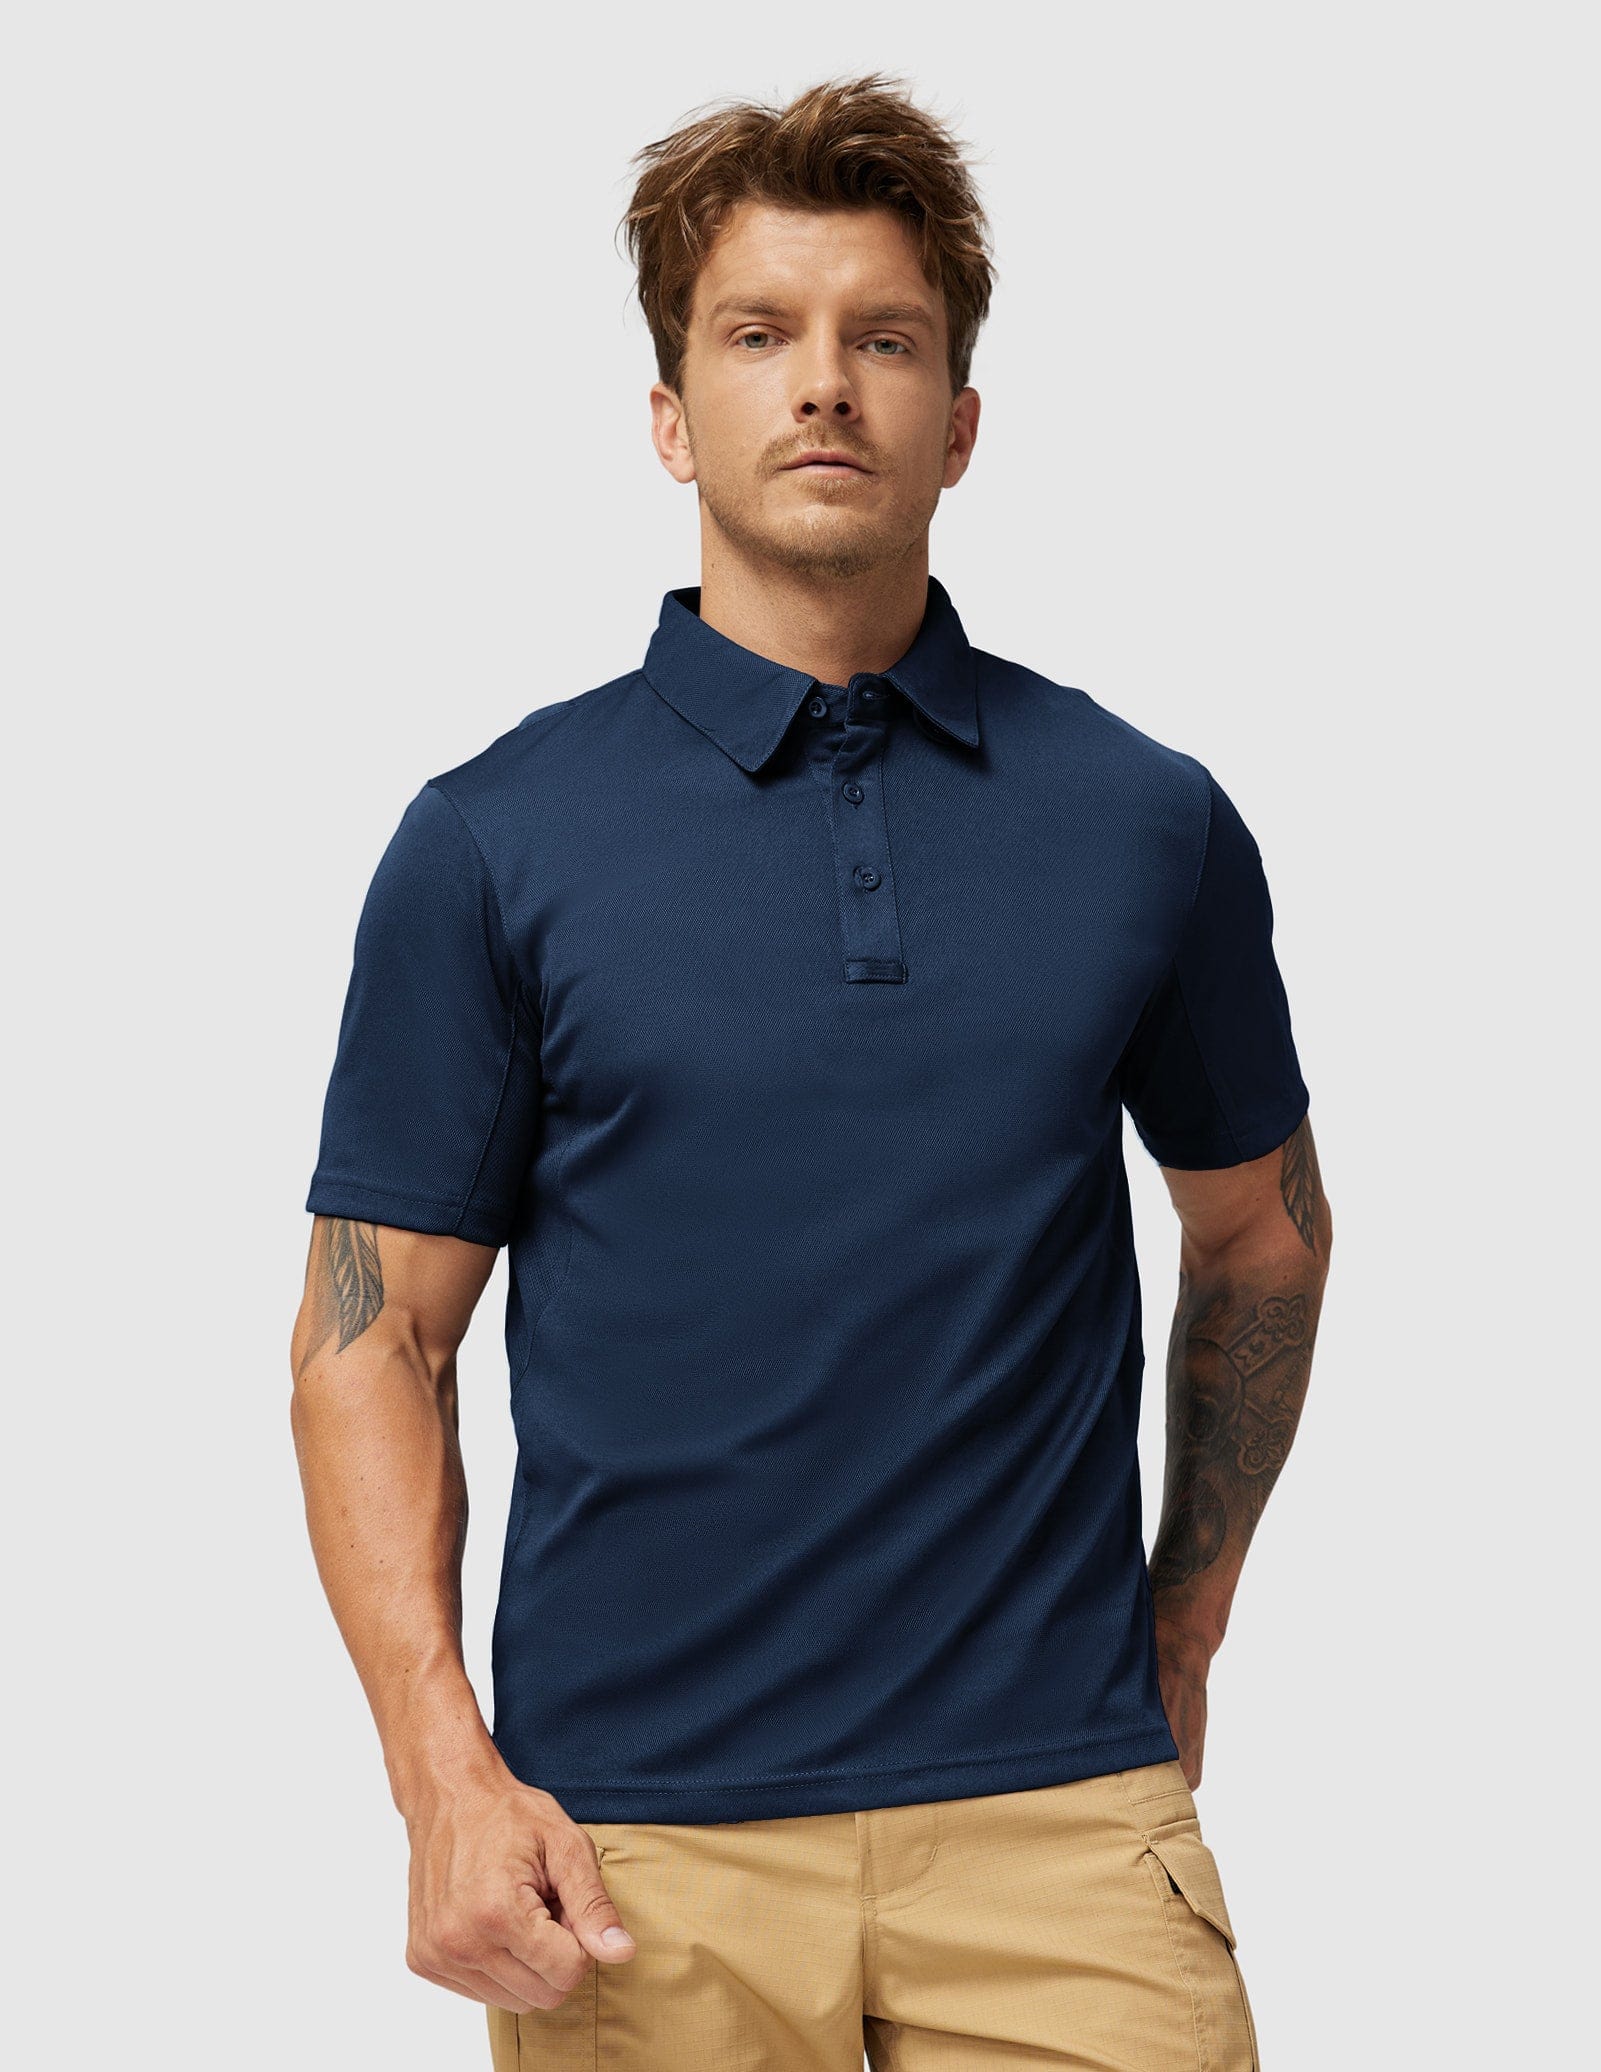 Men's Tactical Polo Shirts Outdoor Performance Collared Shirt Men Polo Dark Blue / S MIER